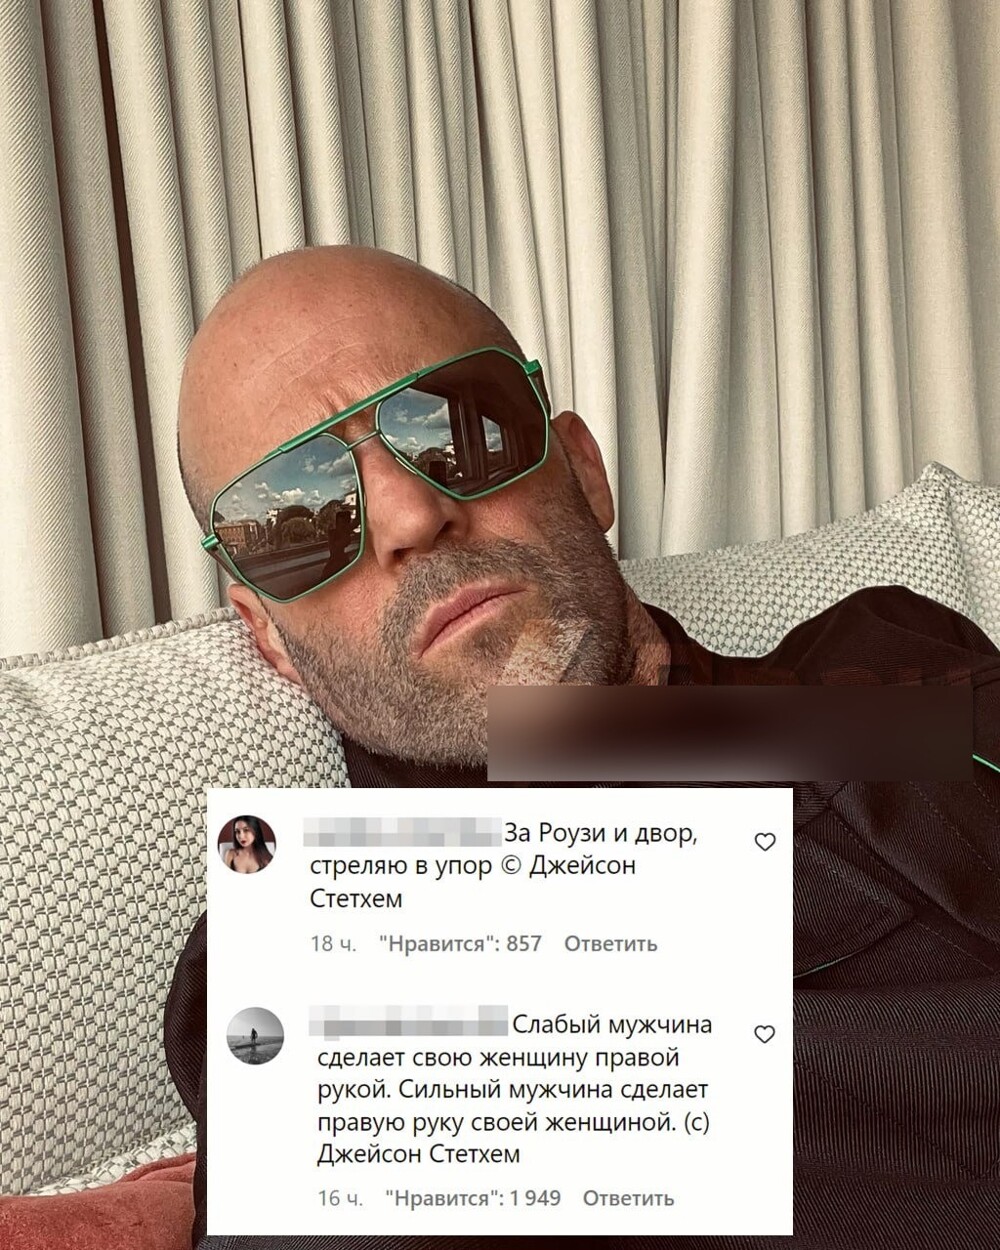 "Если жизнь — это вызов, то я перезвоню": россияне обрушили аккаунт Джейсона Стейтема после его "пацанского" фото